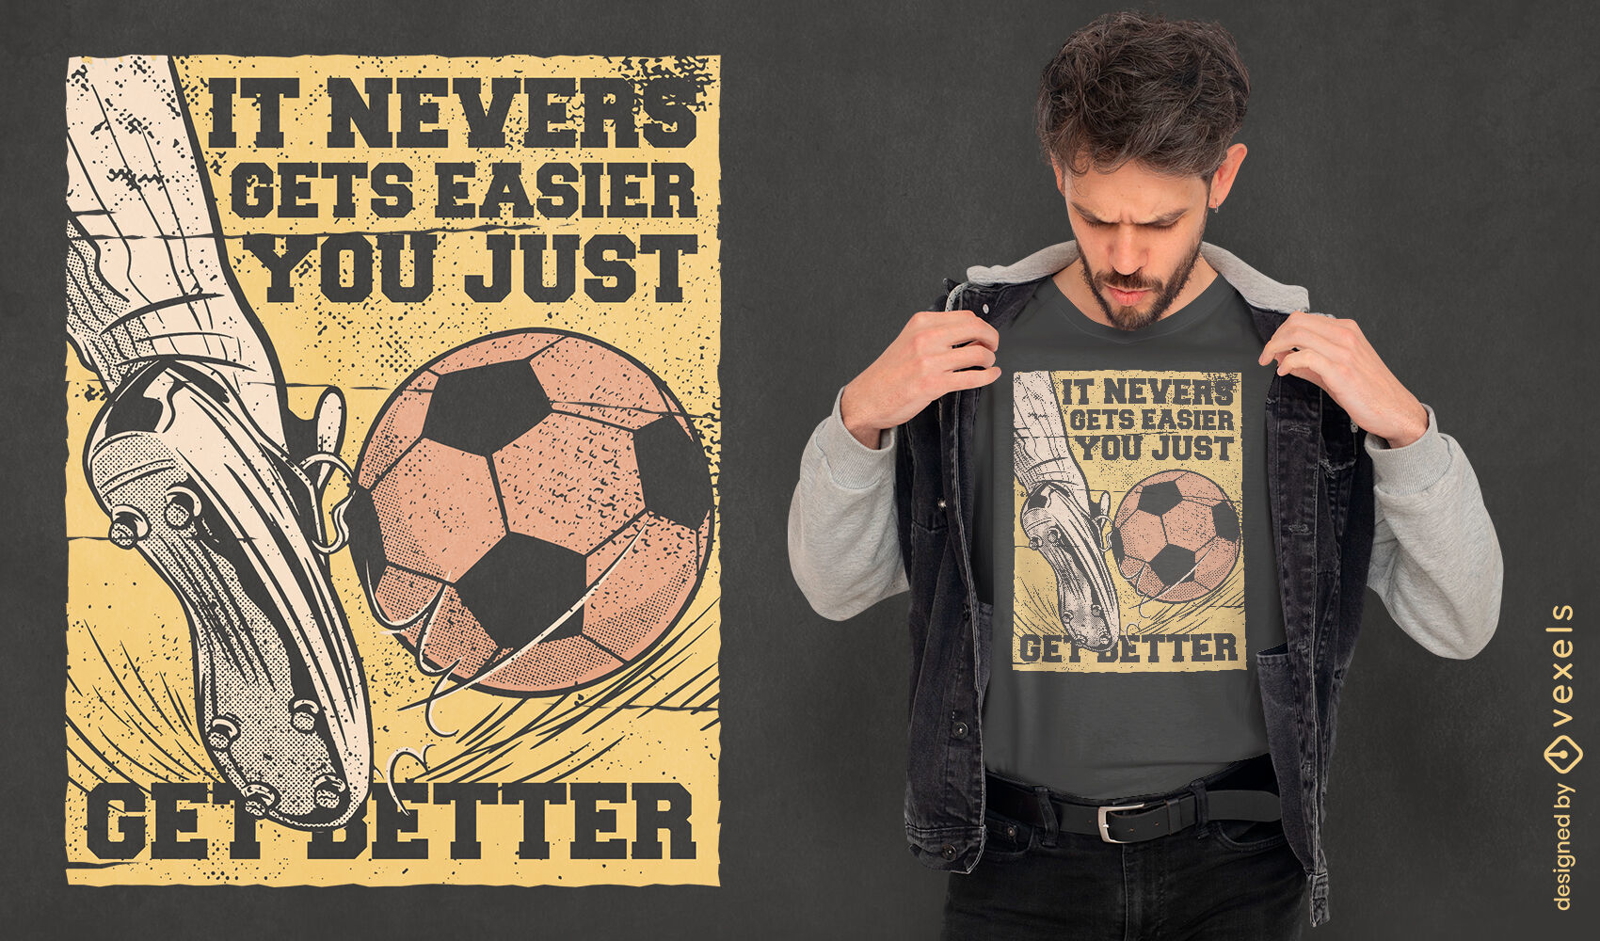 Foot kicking soccer ball t-shirt design